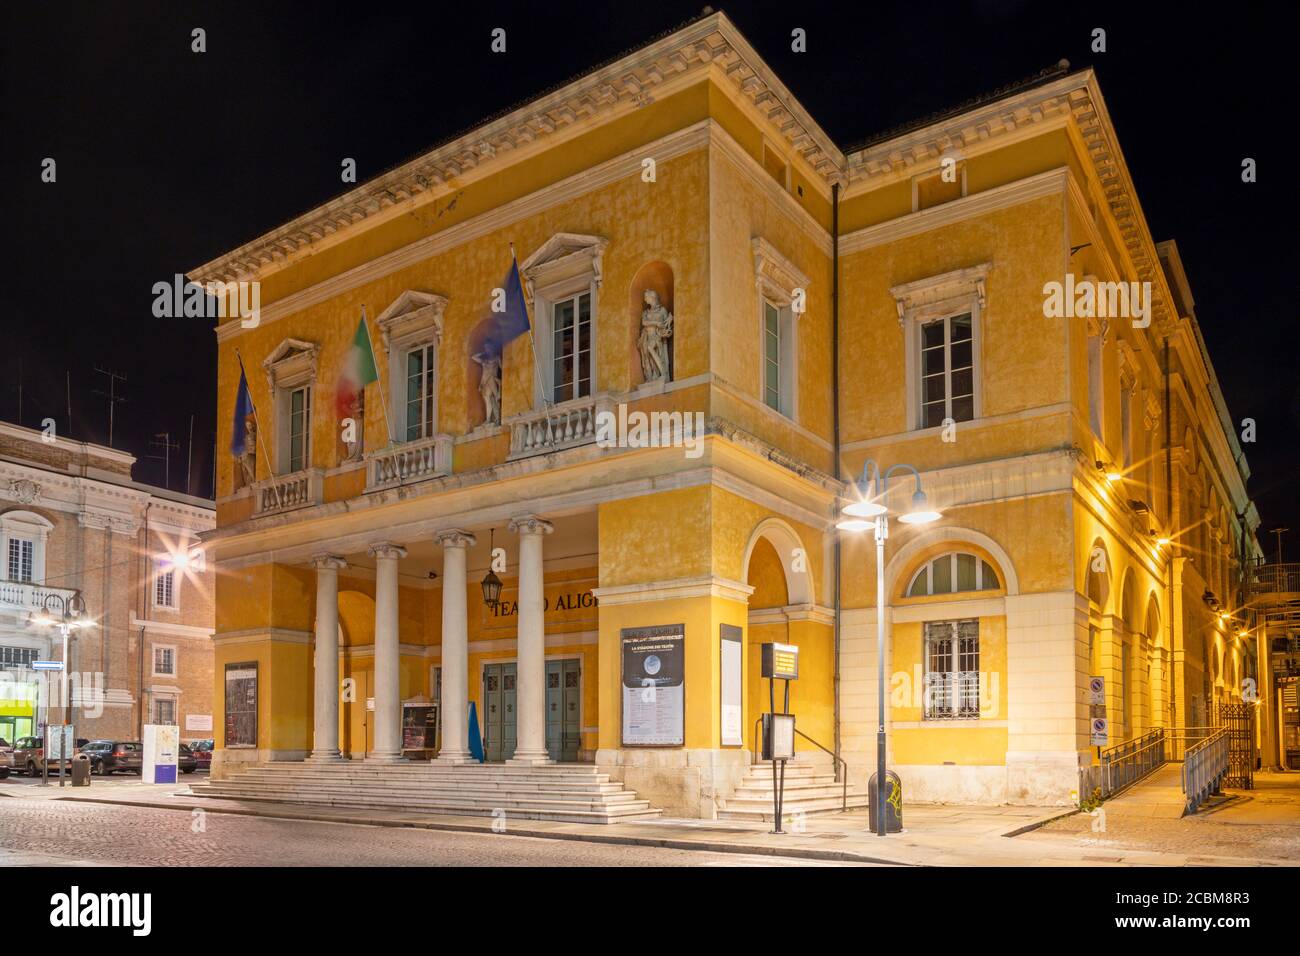 Ravenna - il teatro - Teatro Alighieri di notte. Foto Stock